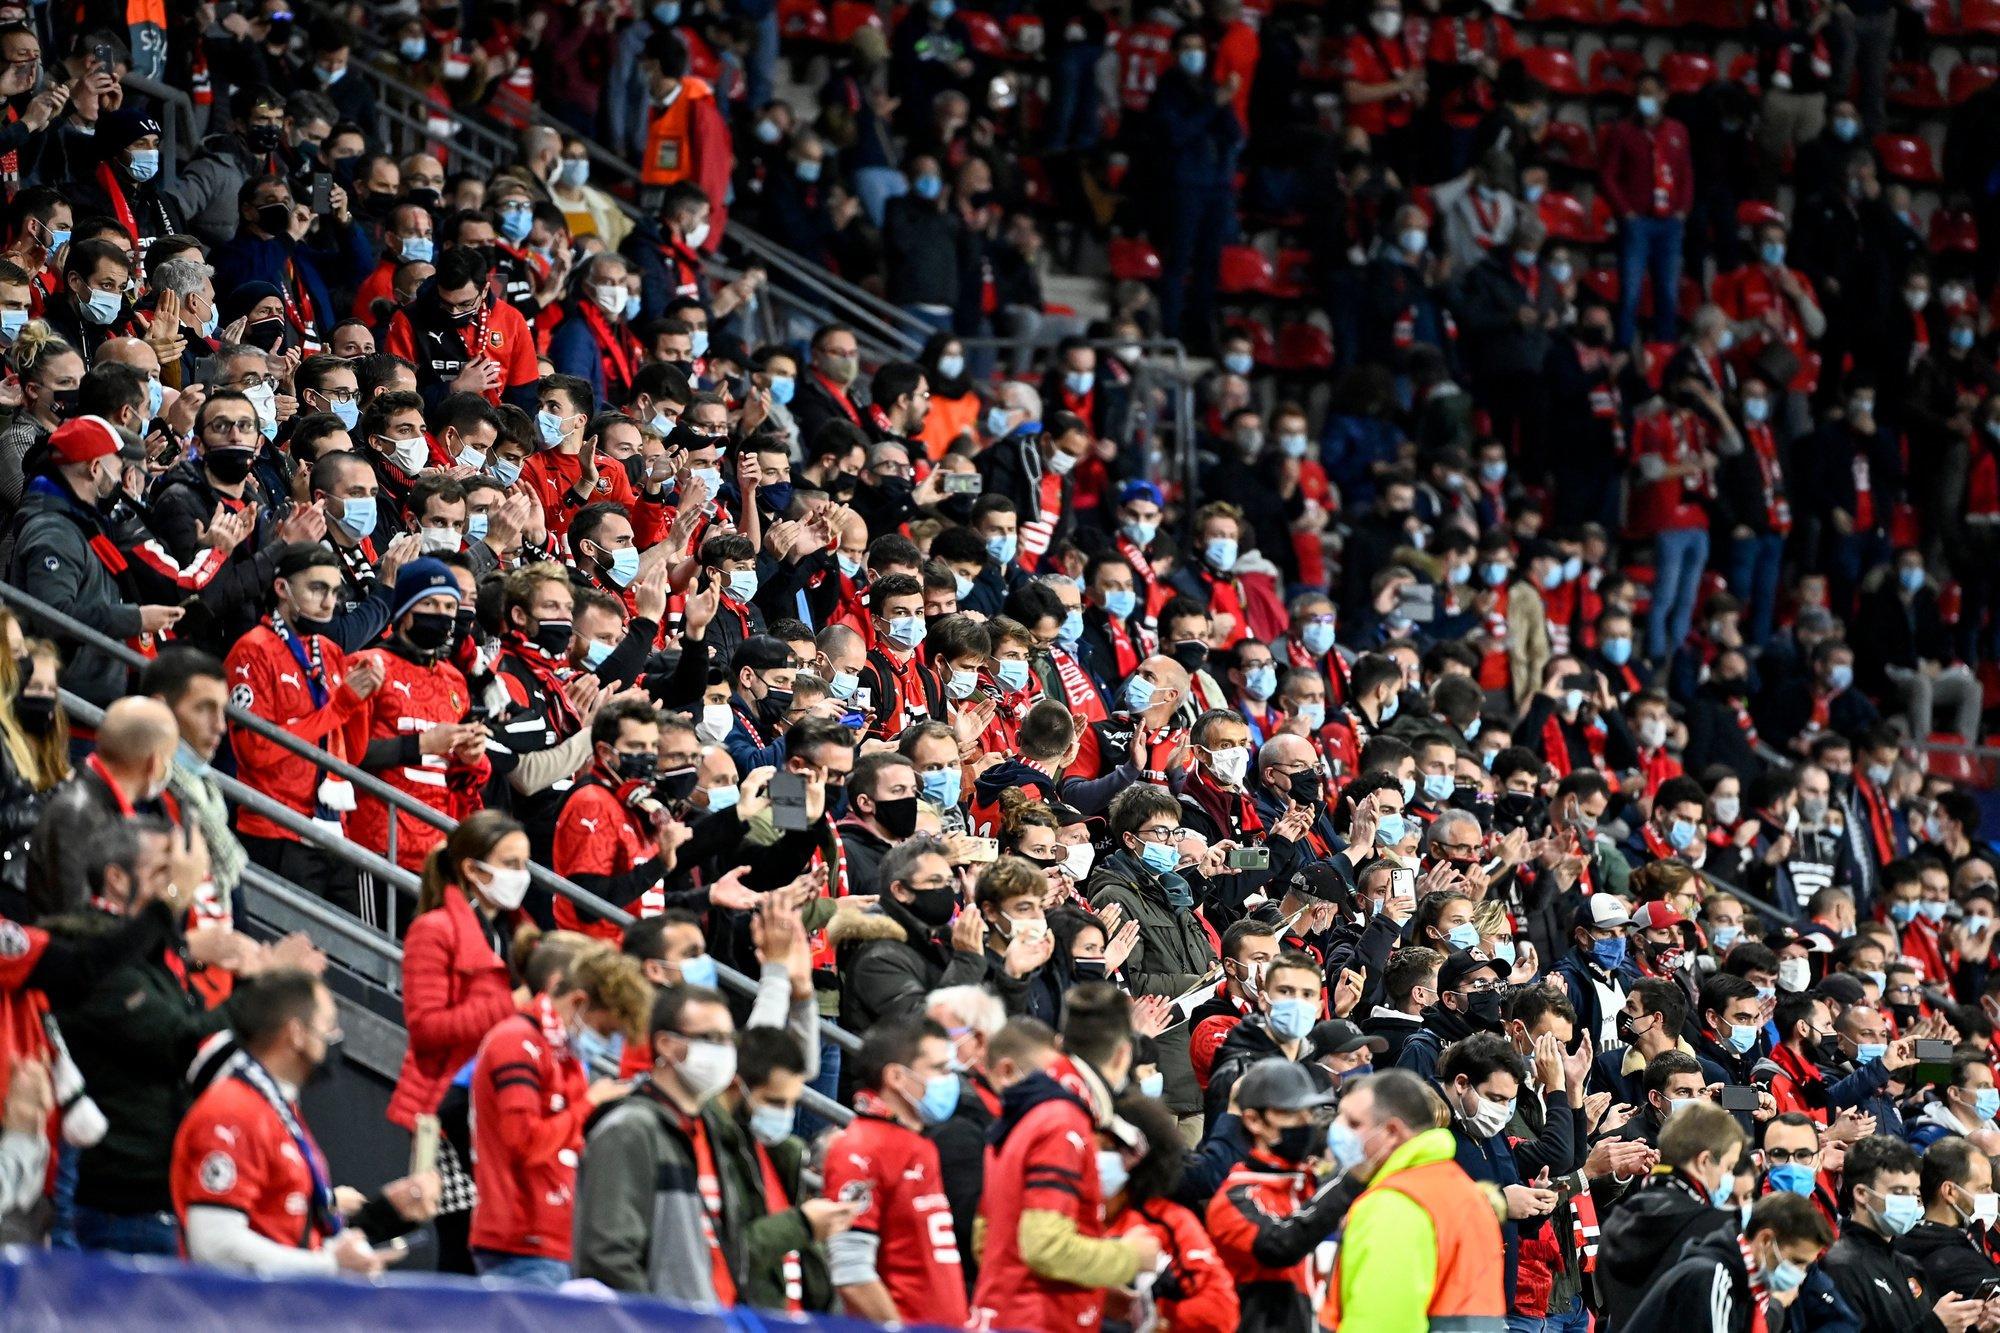 In Rennes zaten de supporters lekker dicht bij elkaar. Gelukkig nog met mondmasker